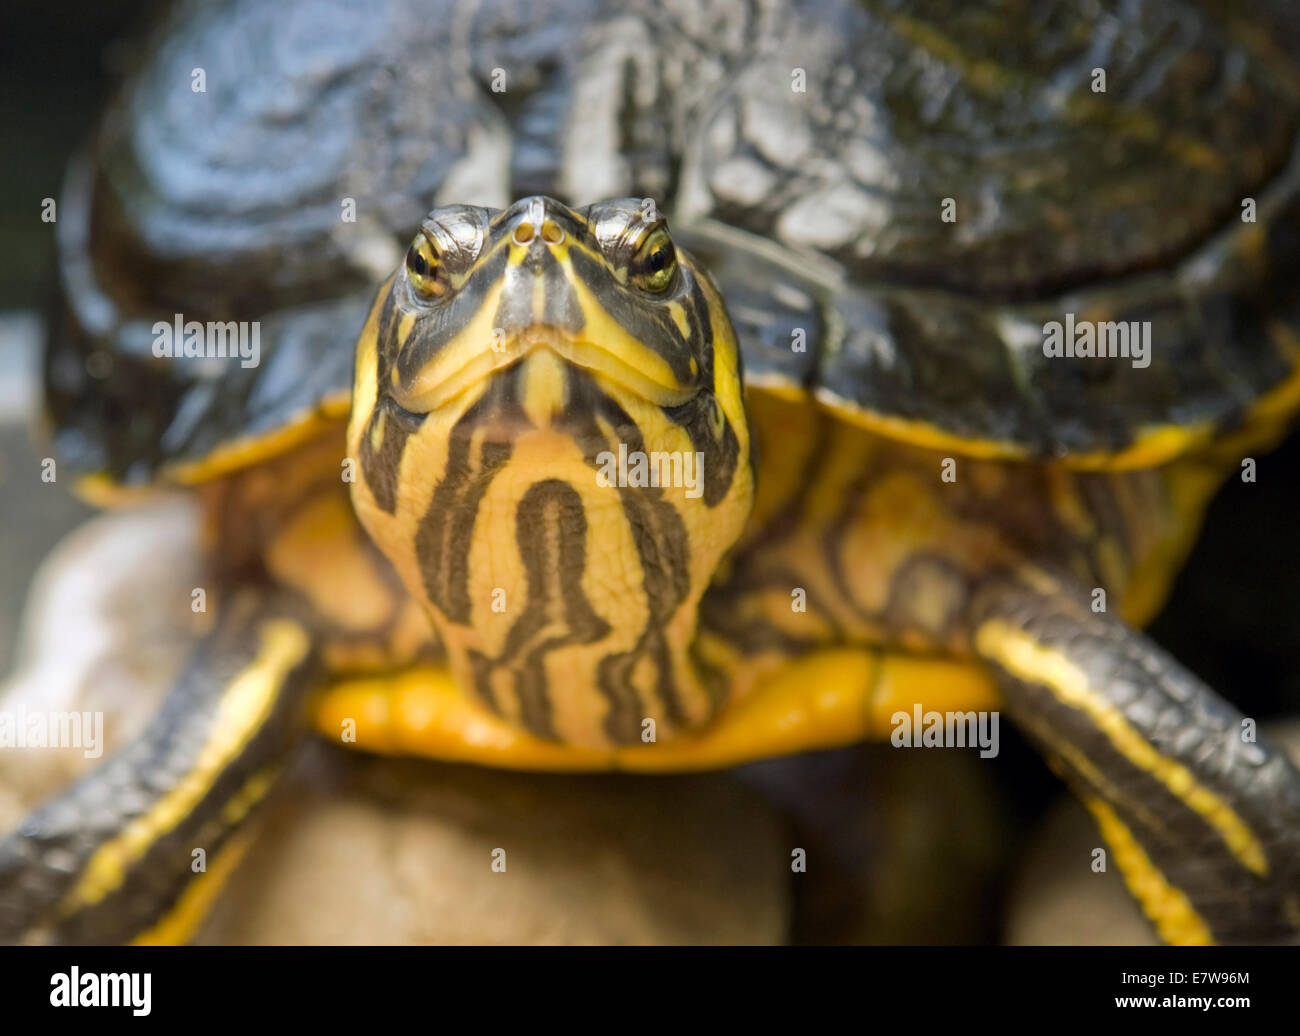 Lateralmente il ritratto di una tartaruga di acqua dolce in atmosfera pietroso Foto Stock